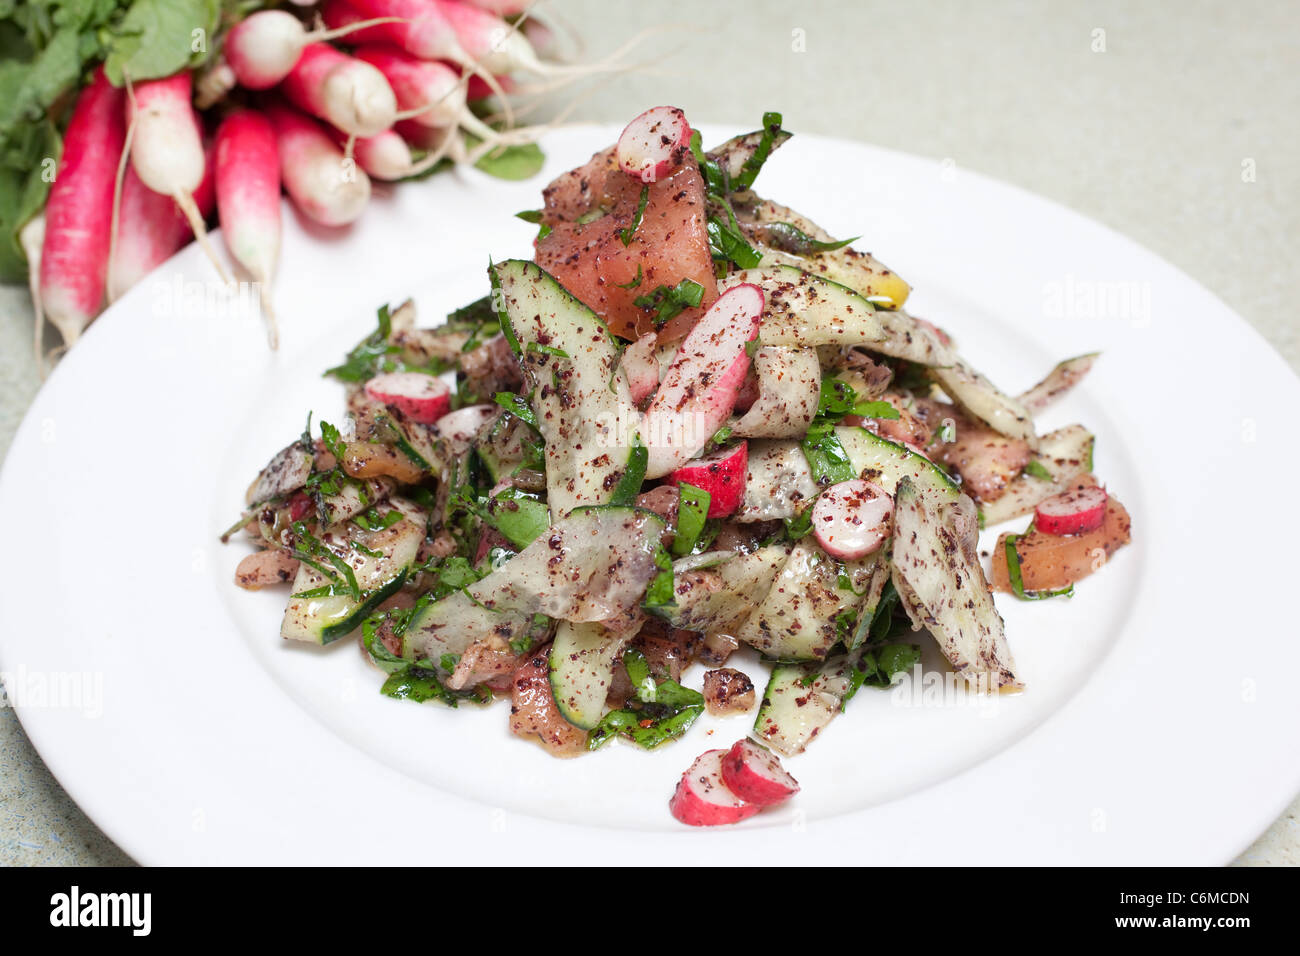 Fattoush Lebanese salad. Photo:Jeff Gilbert Stock Photo